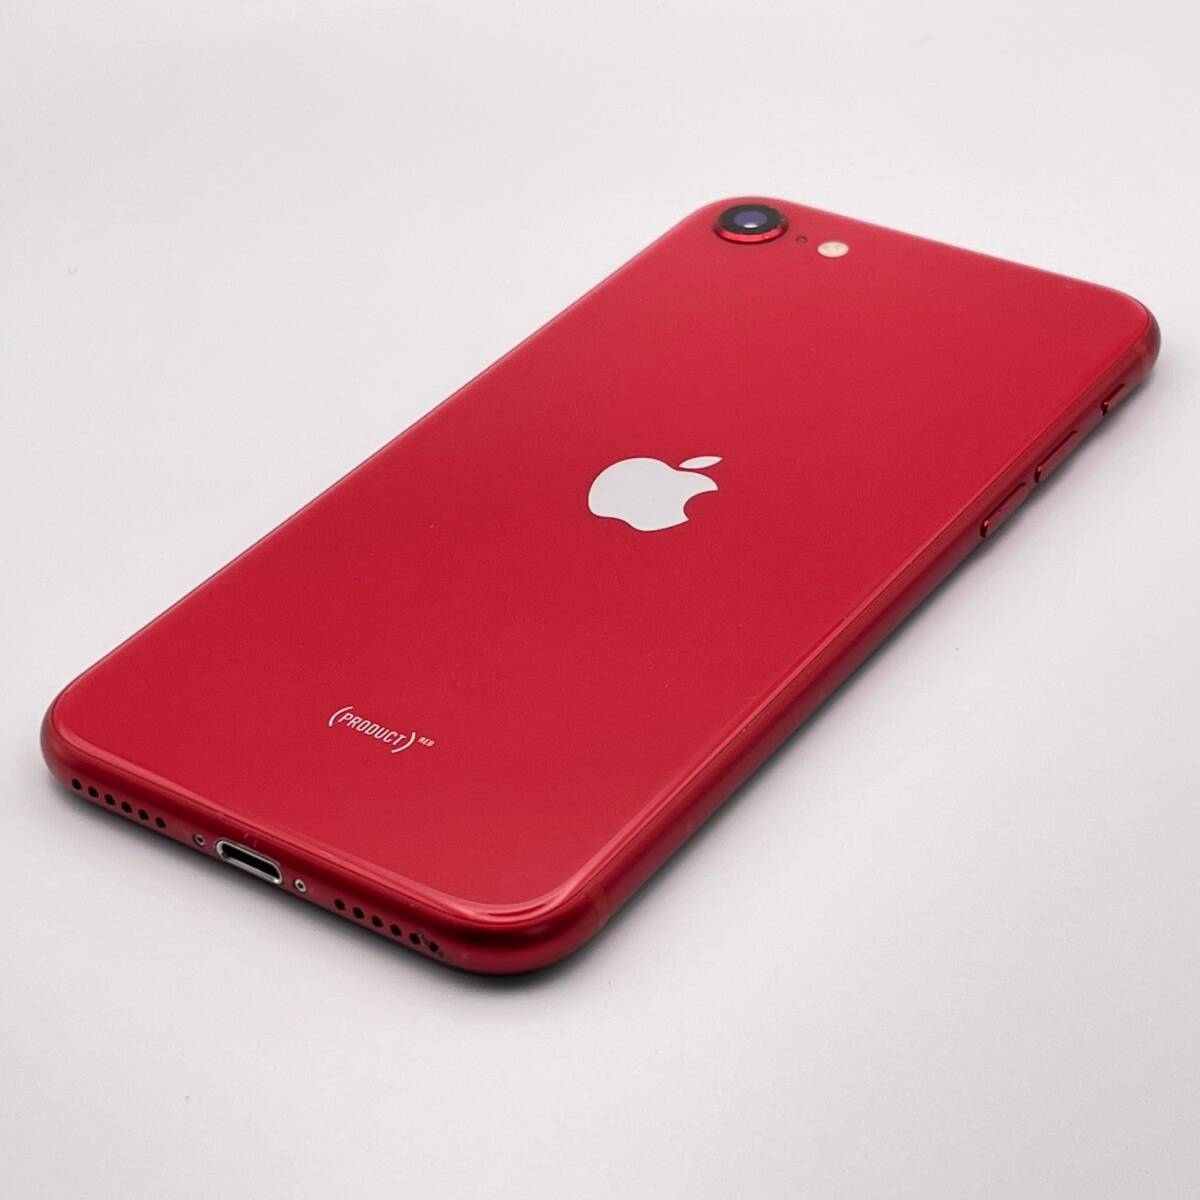  б/у утиль обращение экран трещина Apple Apple iPhone SE no. 2 поколение 64GB (PRODUCT)RED SIM разблокирован .SIM свободный 1 иен из распродажа 